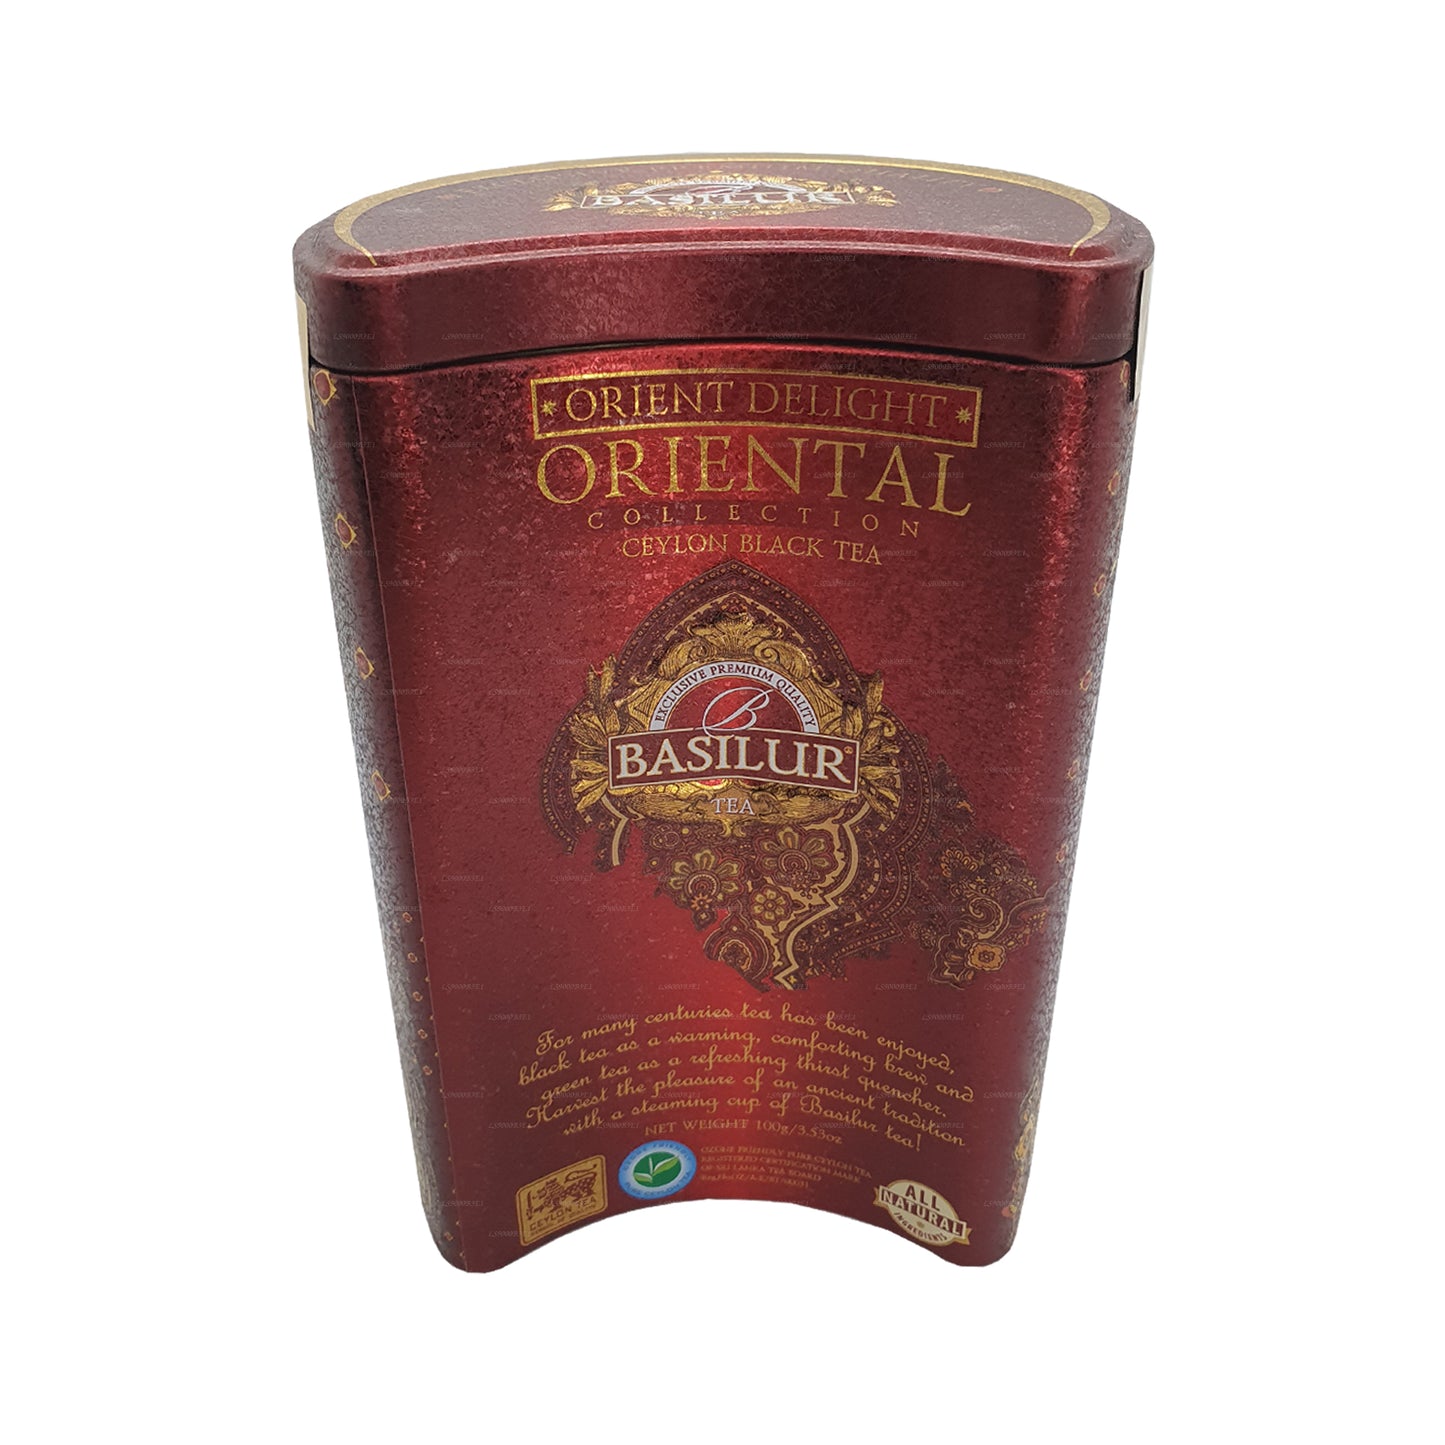 Basilur Oriental "Orient Delight" (100g) Caddy